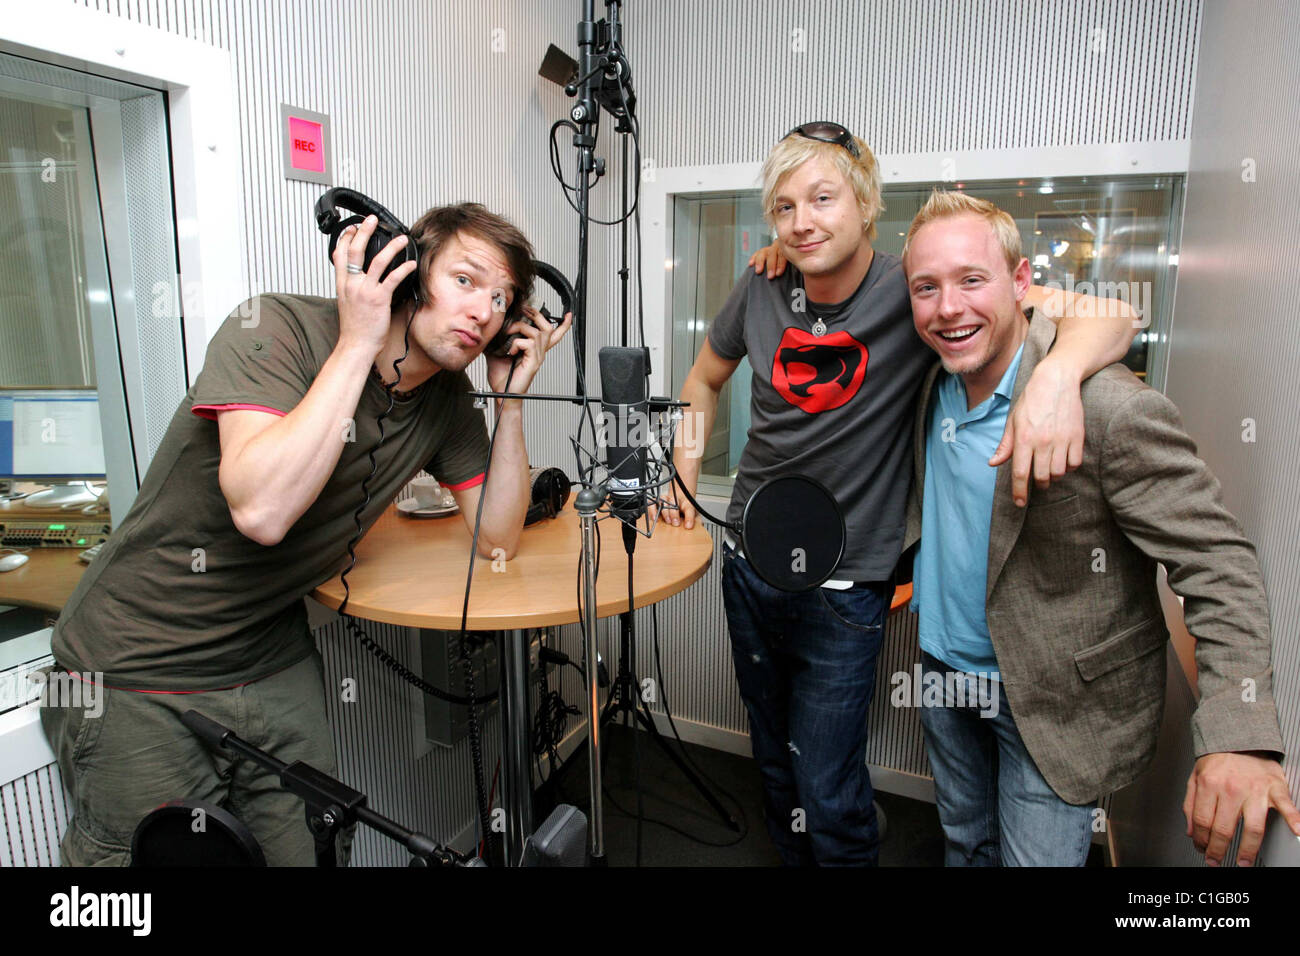 Riku Rajamaa, Samu Haber von Sunrise Avenue und Radio DJ Haacke an Berlin  radio Station 94.3 rs2 Berlin, Deutschland - 18.05.09 Stockfotografie -  Alamy